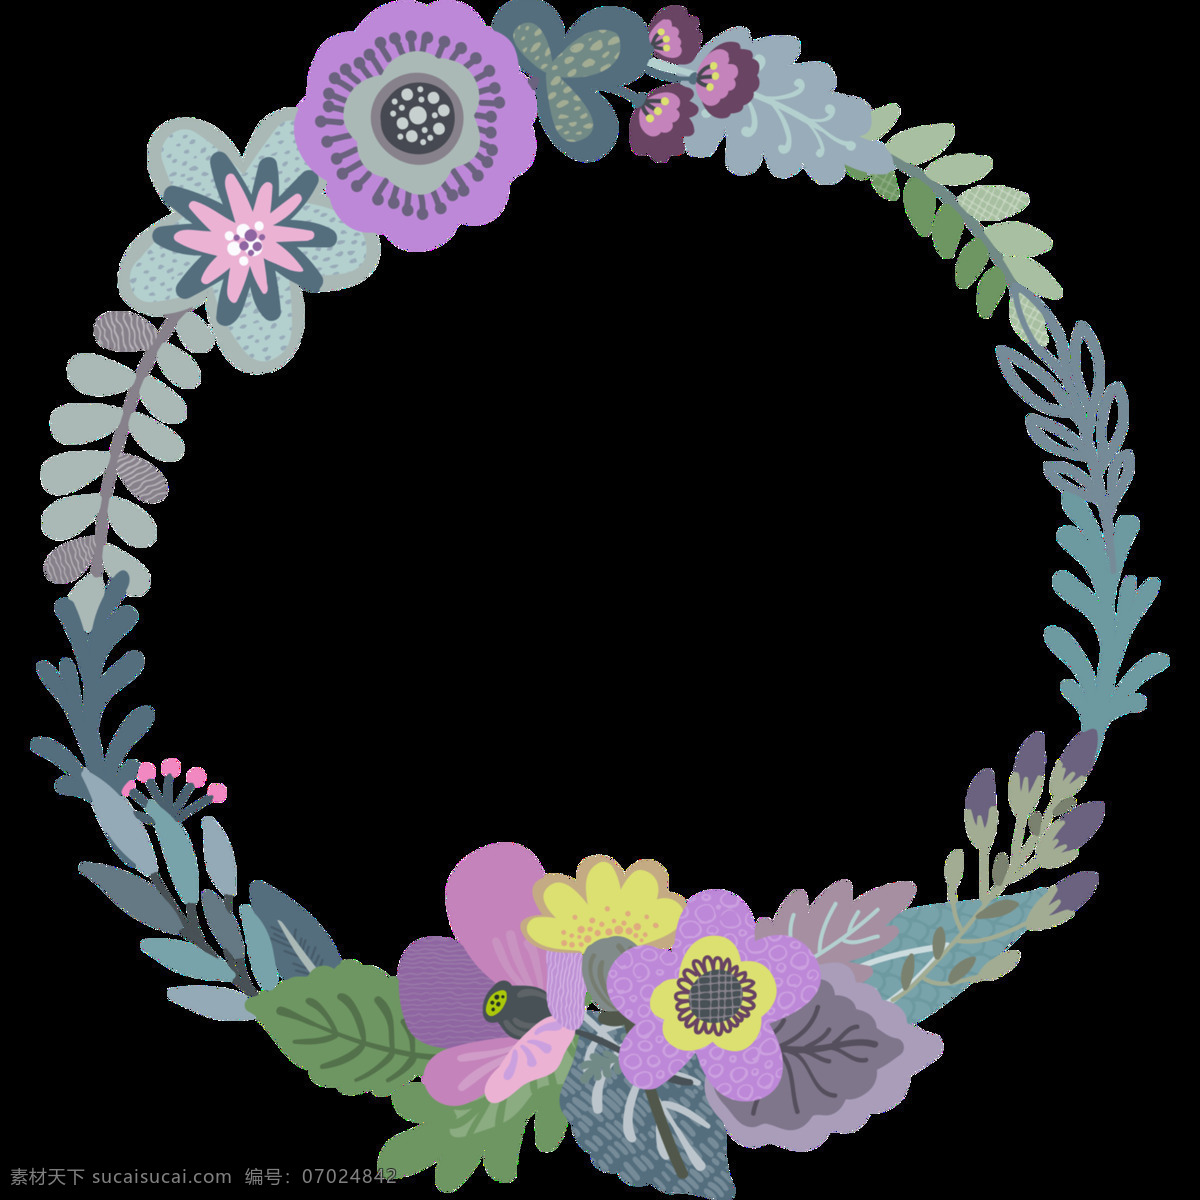 圆形 艳丽 花卉 透明 花环 卡通 抠图专用 装饰 设计素材